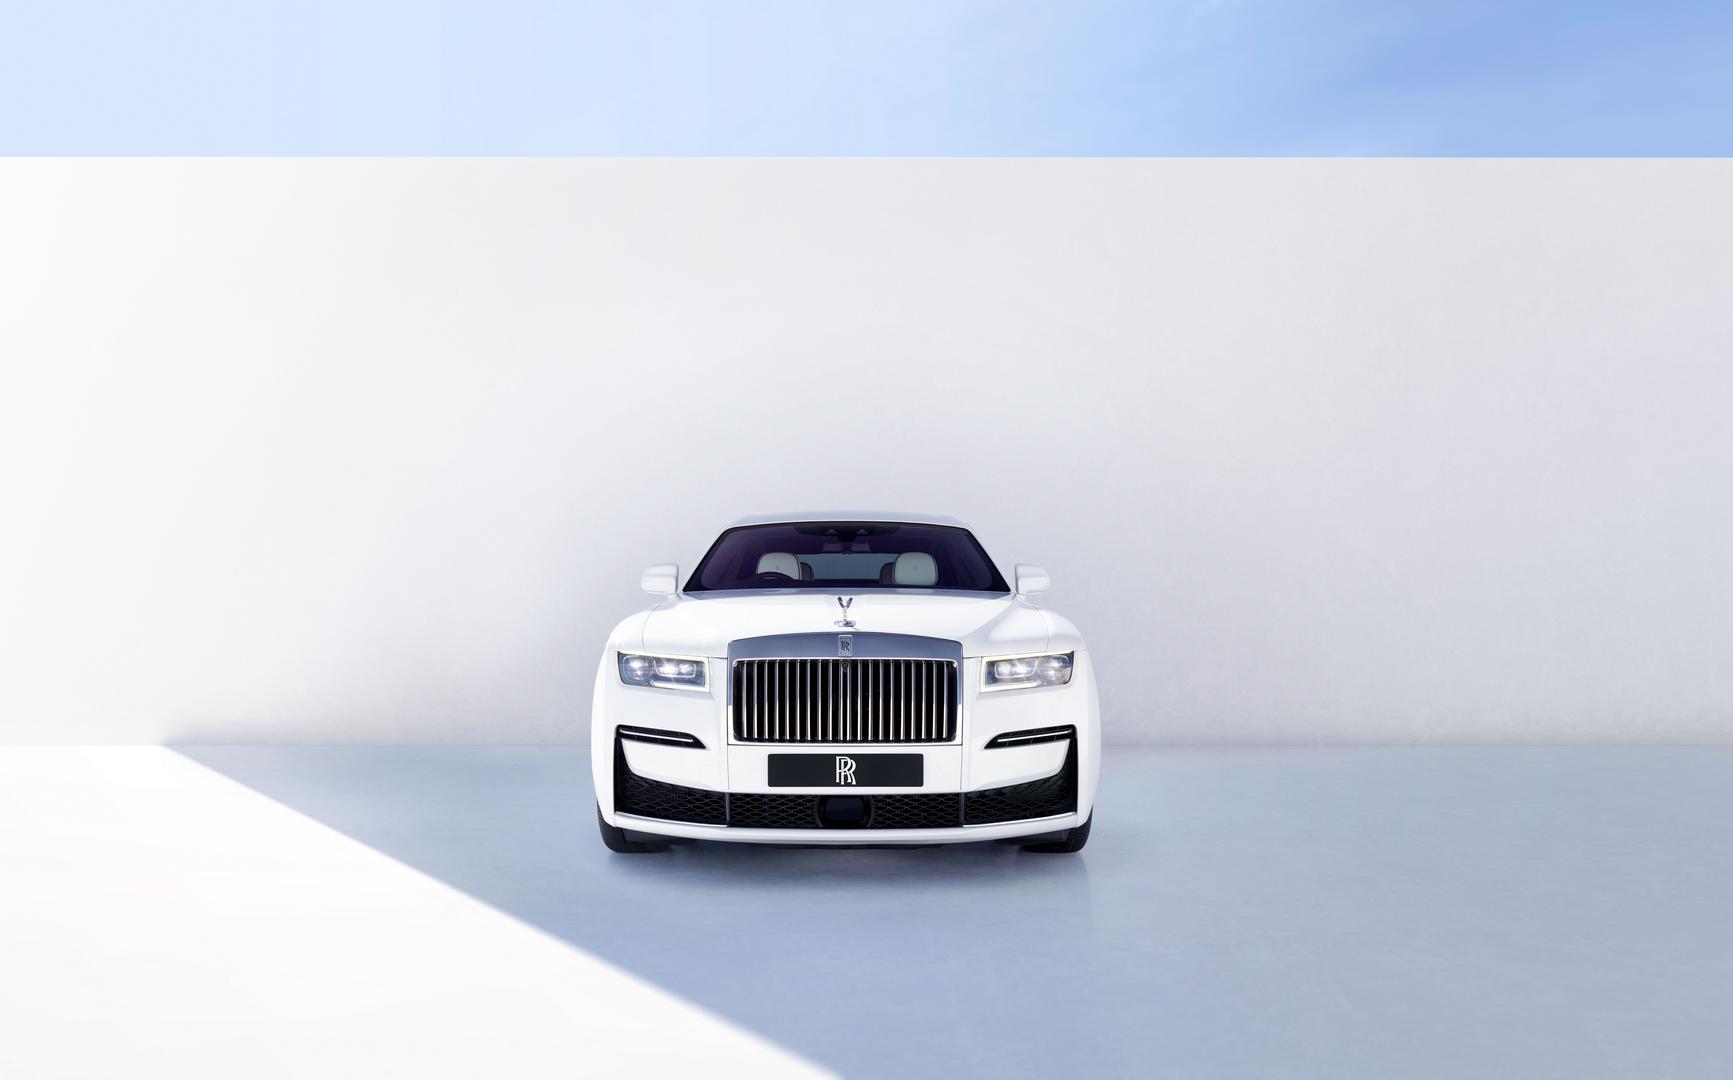 Новый RollsRoyce Phantom получил стальные колеса и керамический салон   Автомобили  АвтоВзгляд